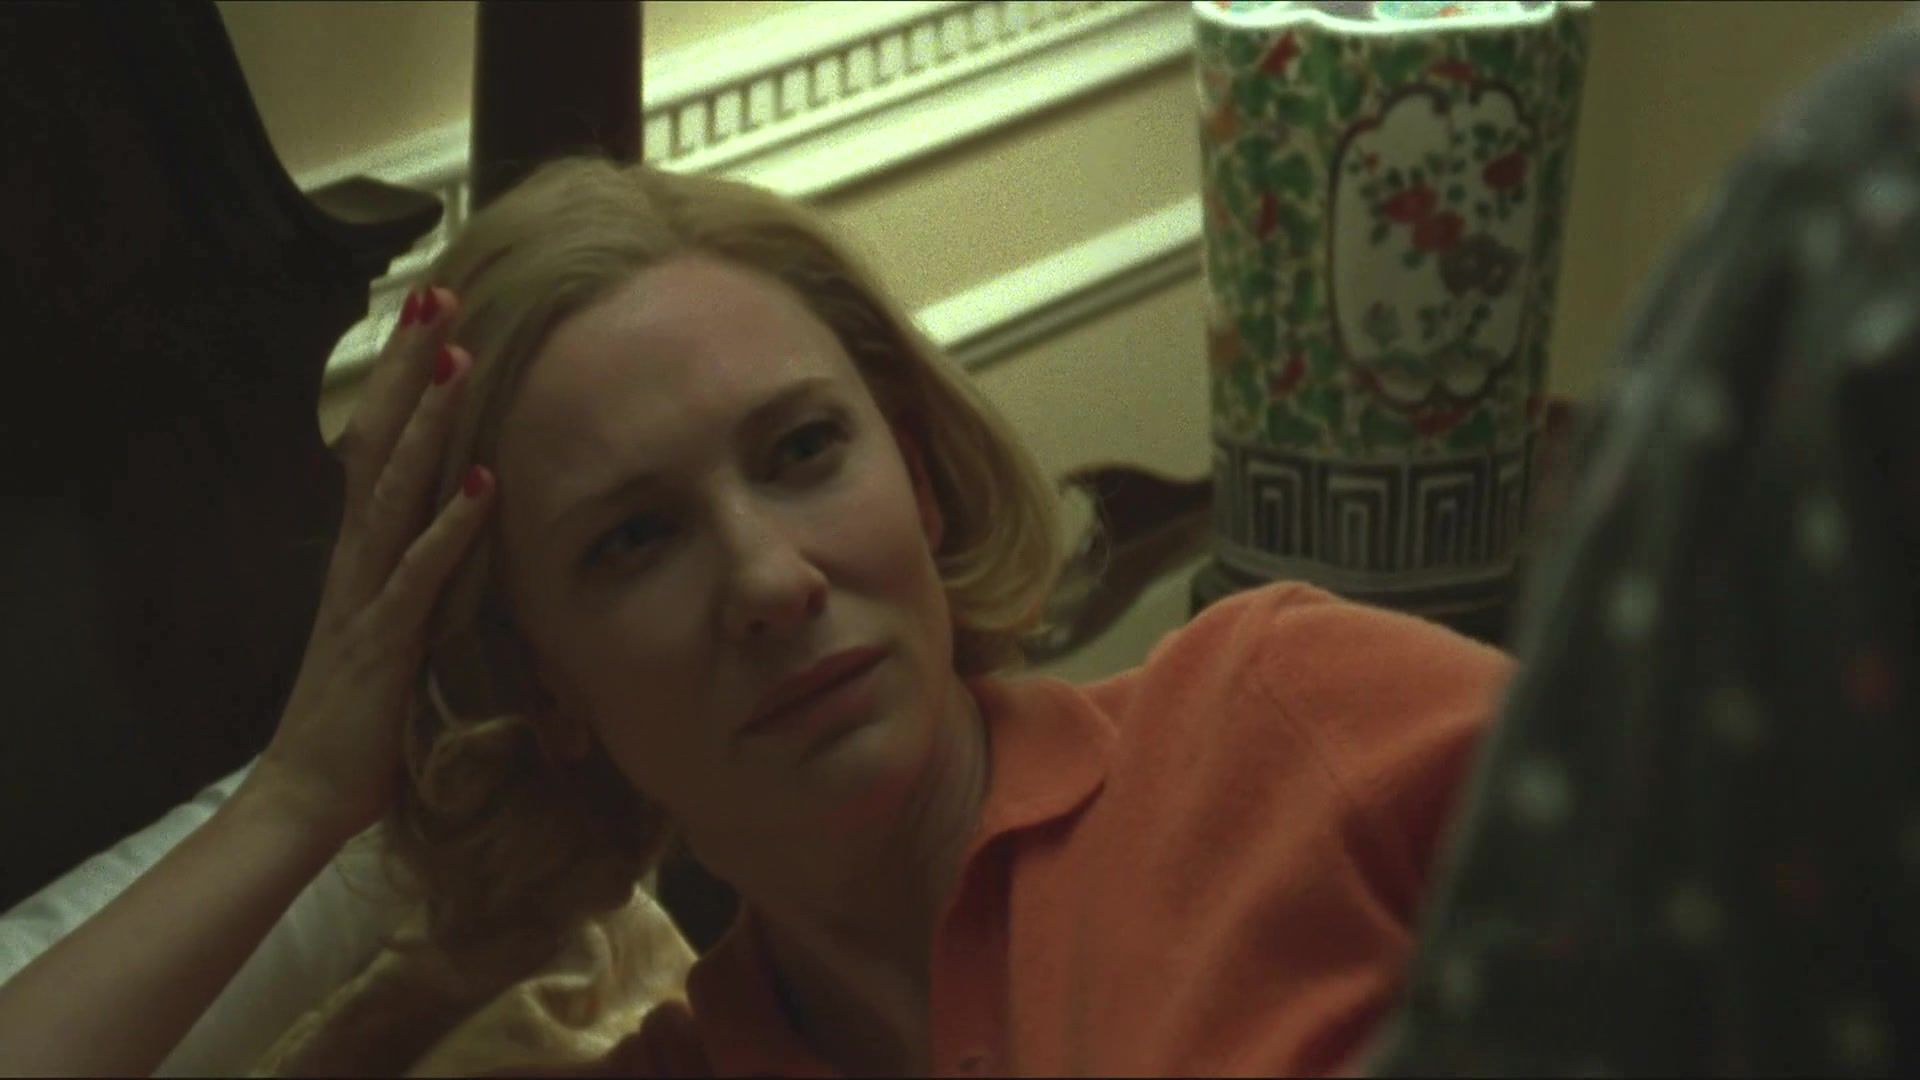 Strange Naked Rooney Mara, Cate Blanchett nude - Carol (2015) Lovers